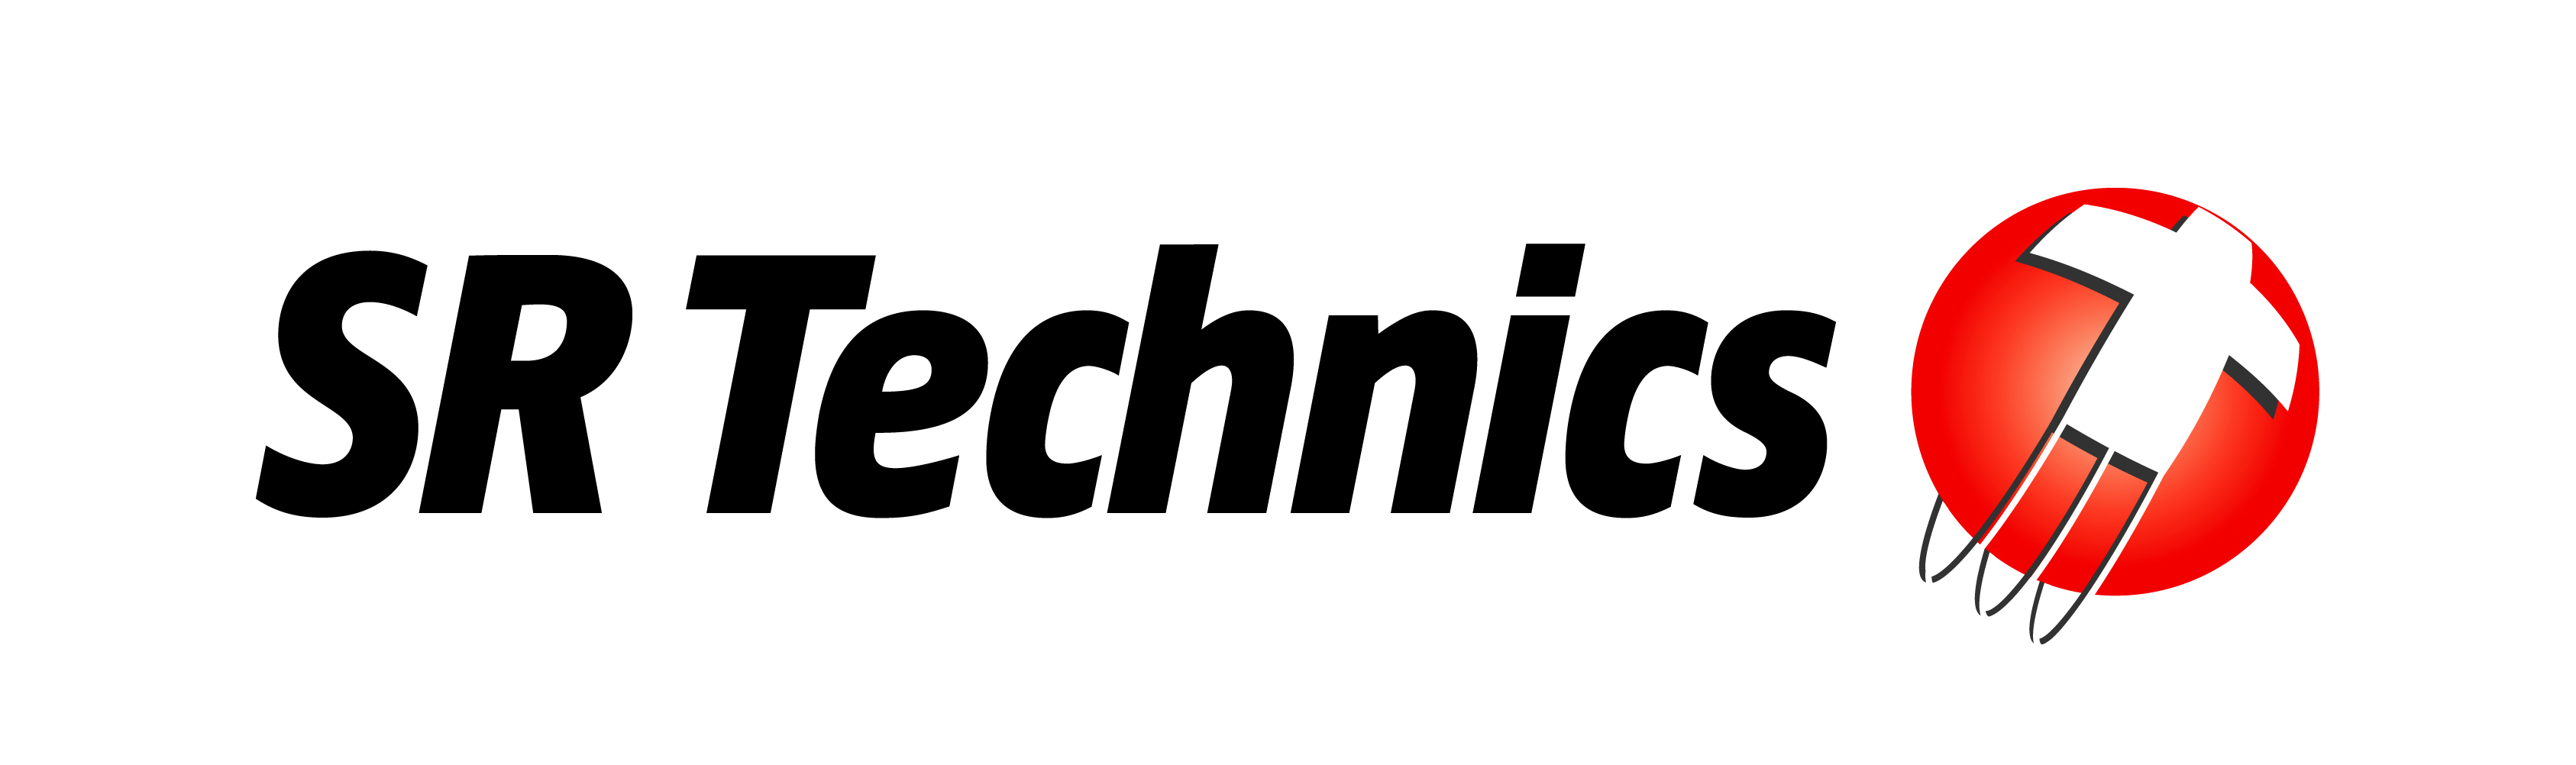 SR Technics announces management buyout of Armac Systems